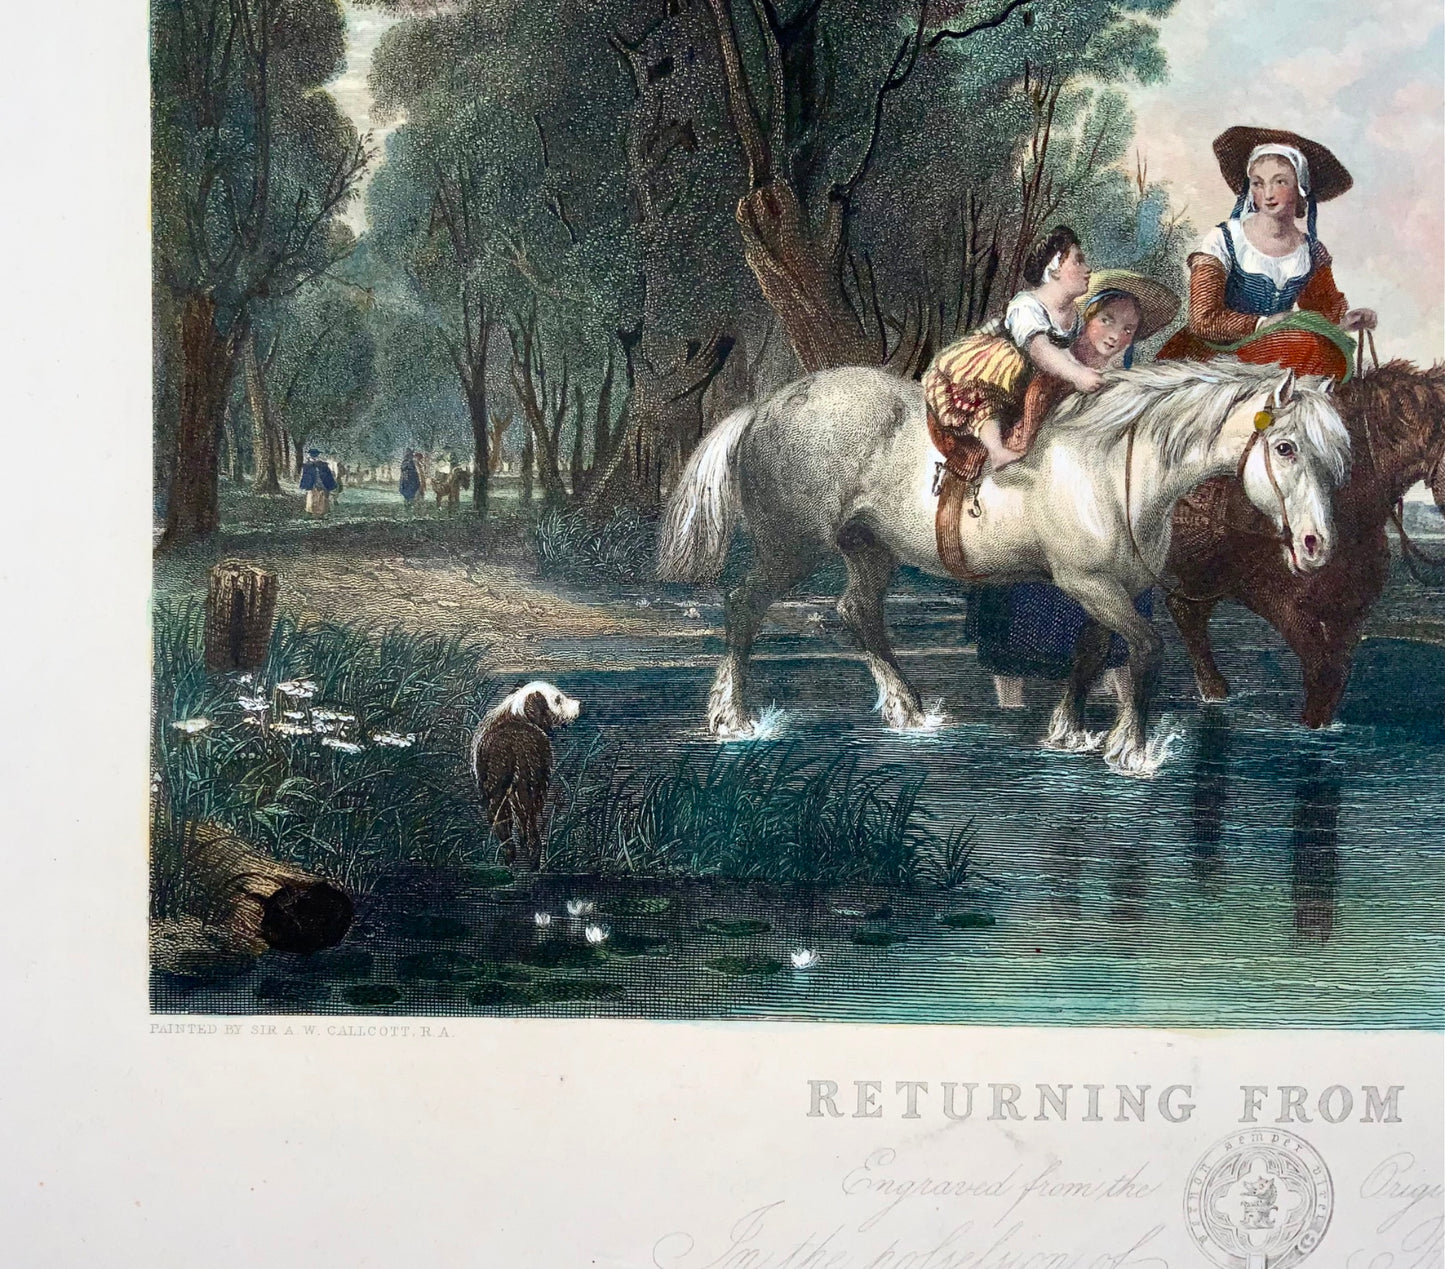 1845 De retour du marché, AW Calcott, très grande gravure colorée de 55 cm, paysage